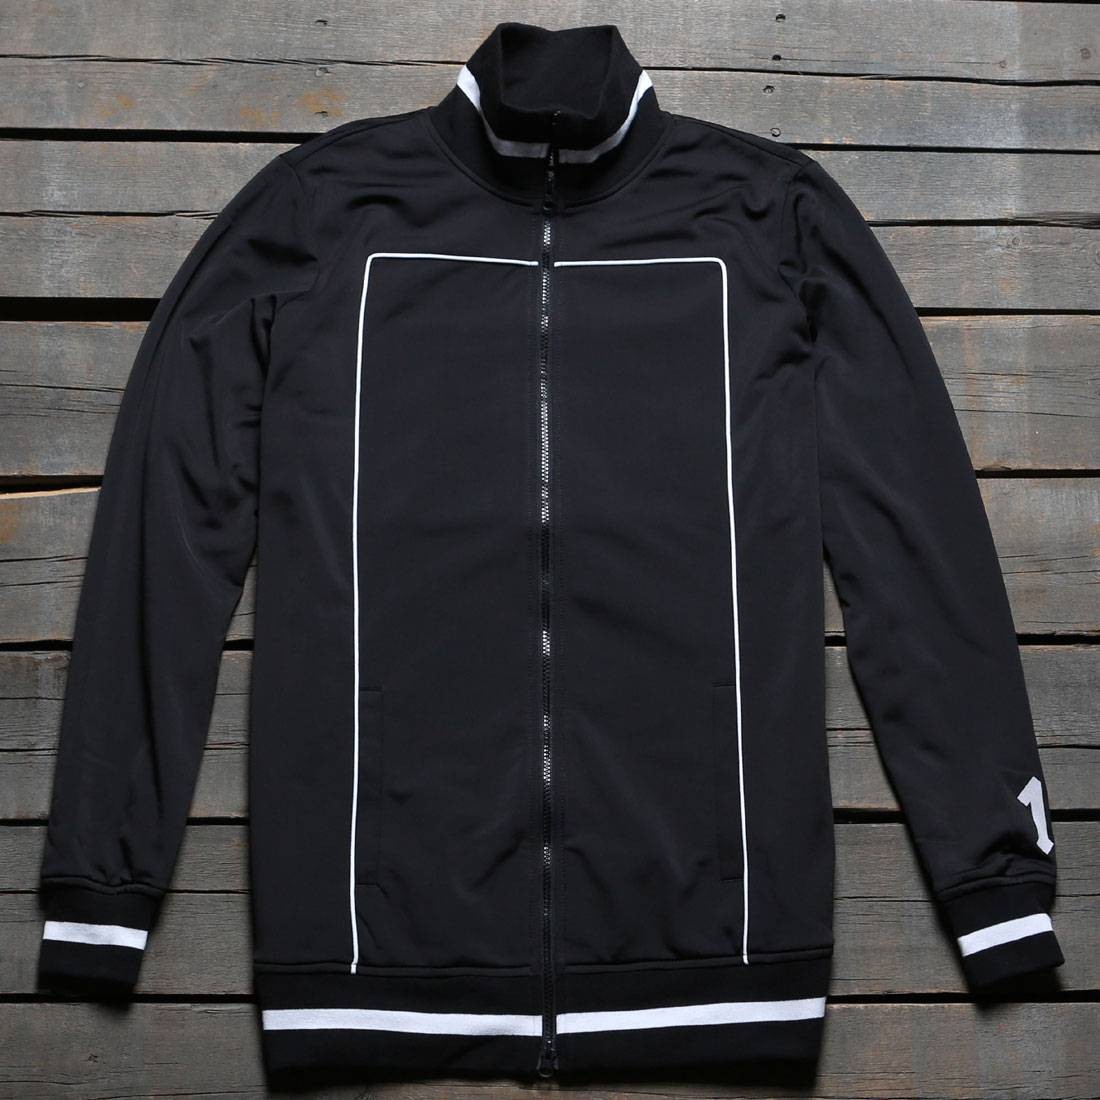 puma track jacket black